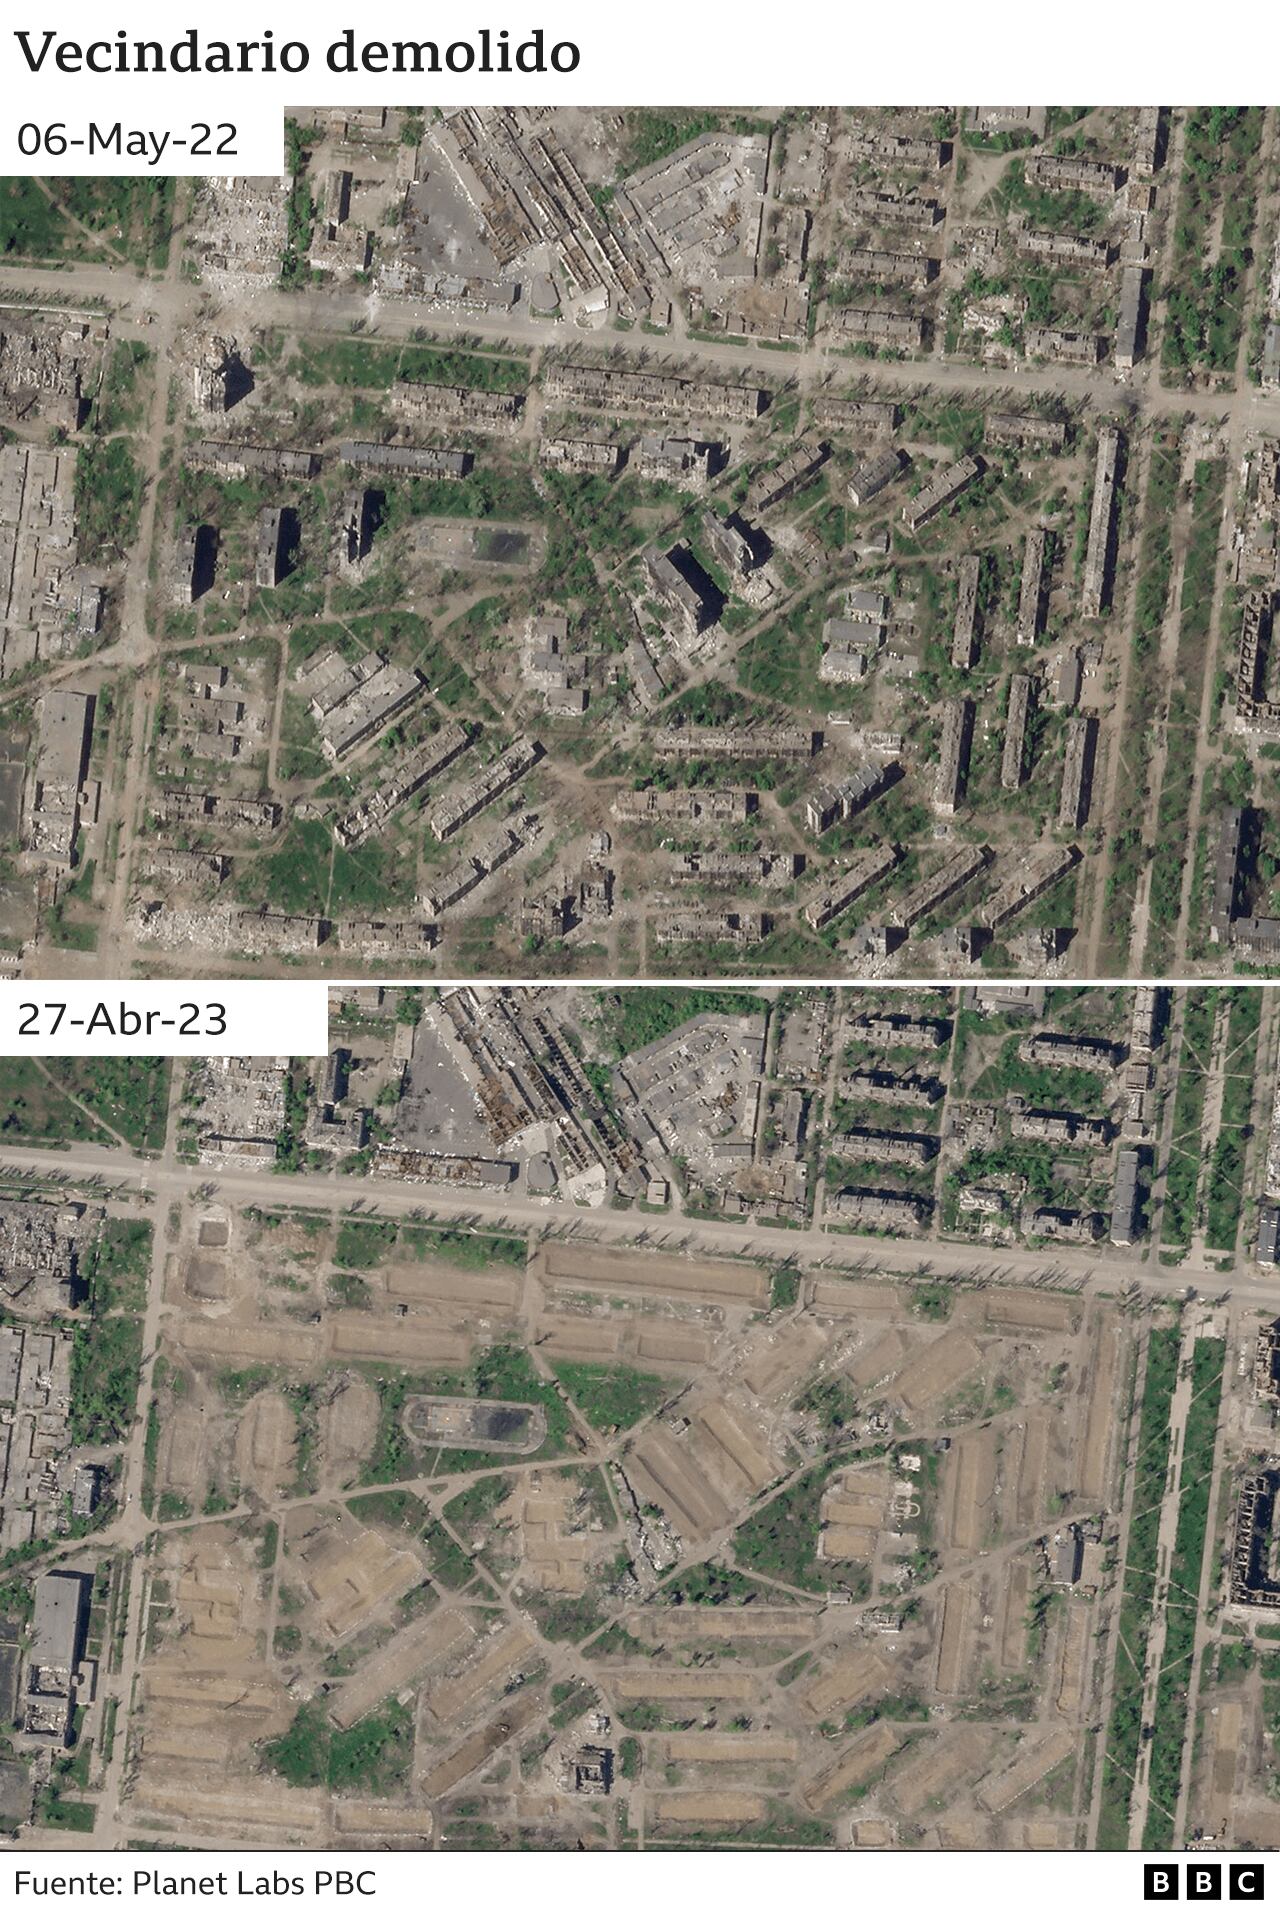 Satellite image of the demolished neighborhood